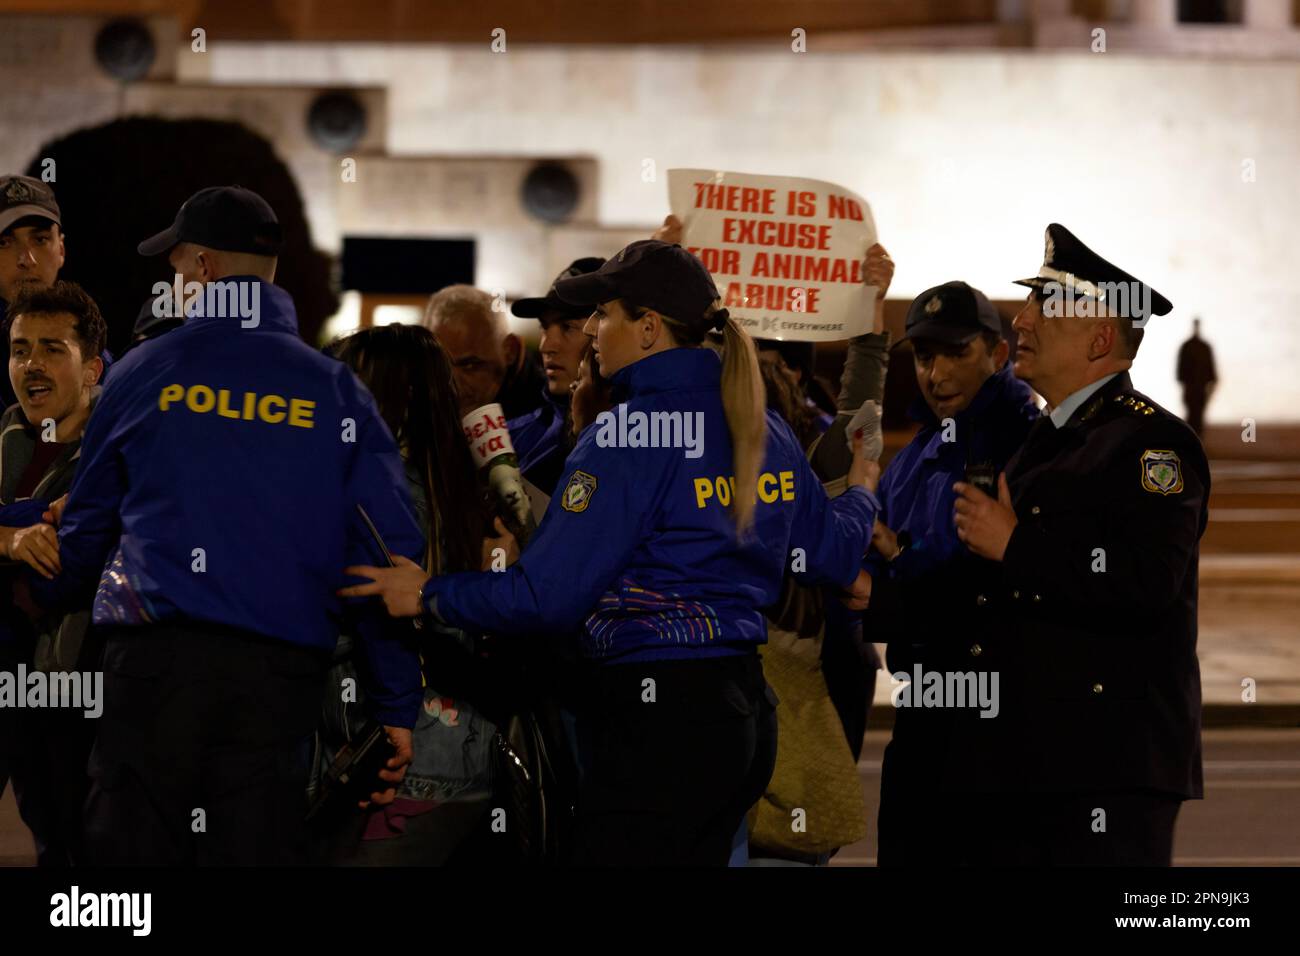 Protest veganischer Aktivisten gegen Tiermissbrauch und Fleischkonsum während der Osterfeierlichkeiten, während Polizisten in blauer Uniform sie zurückdrängen. Stockfoto